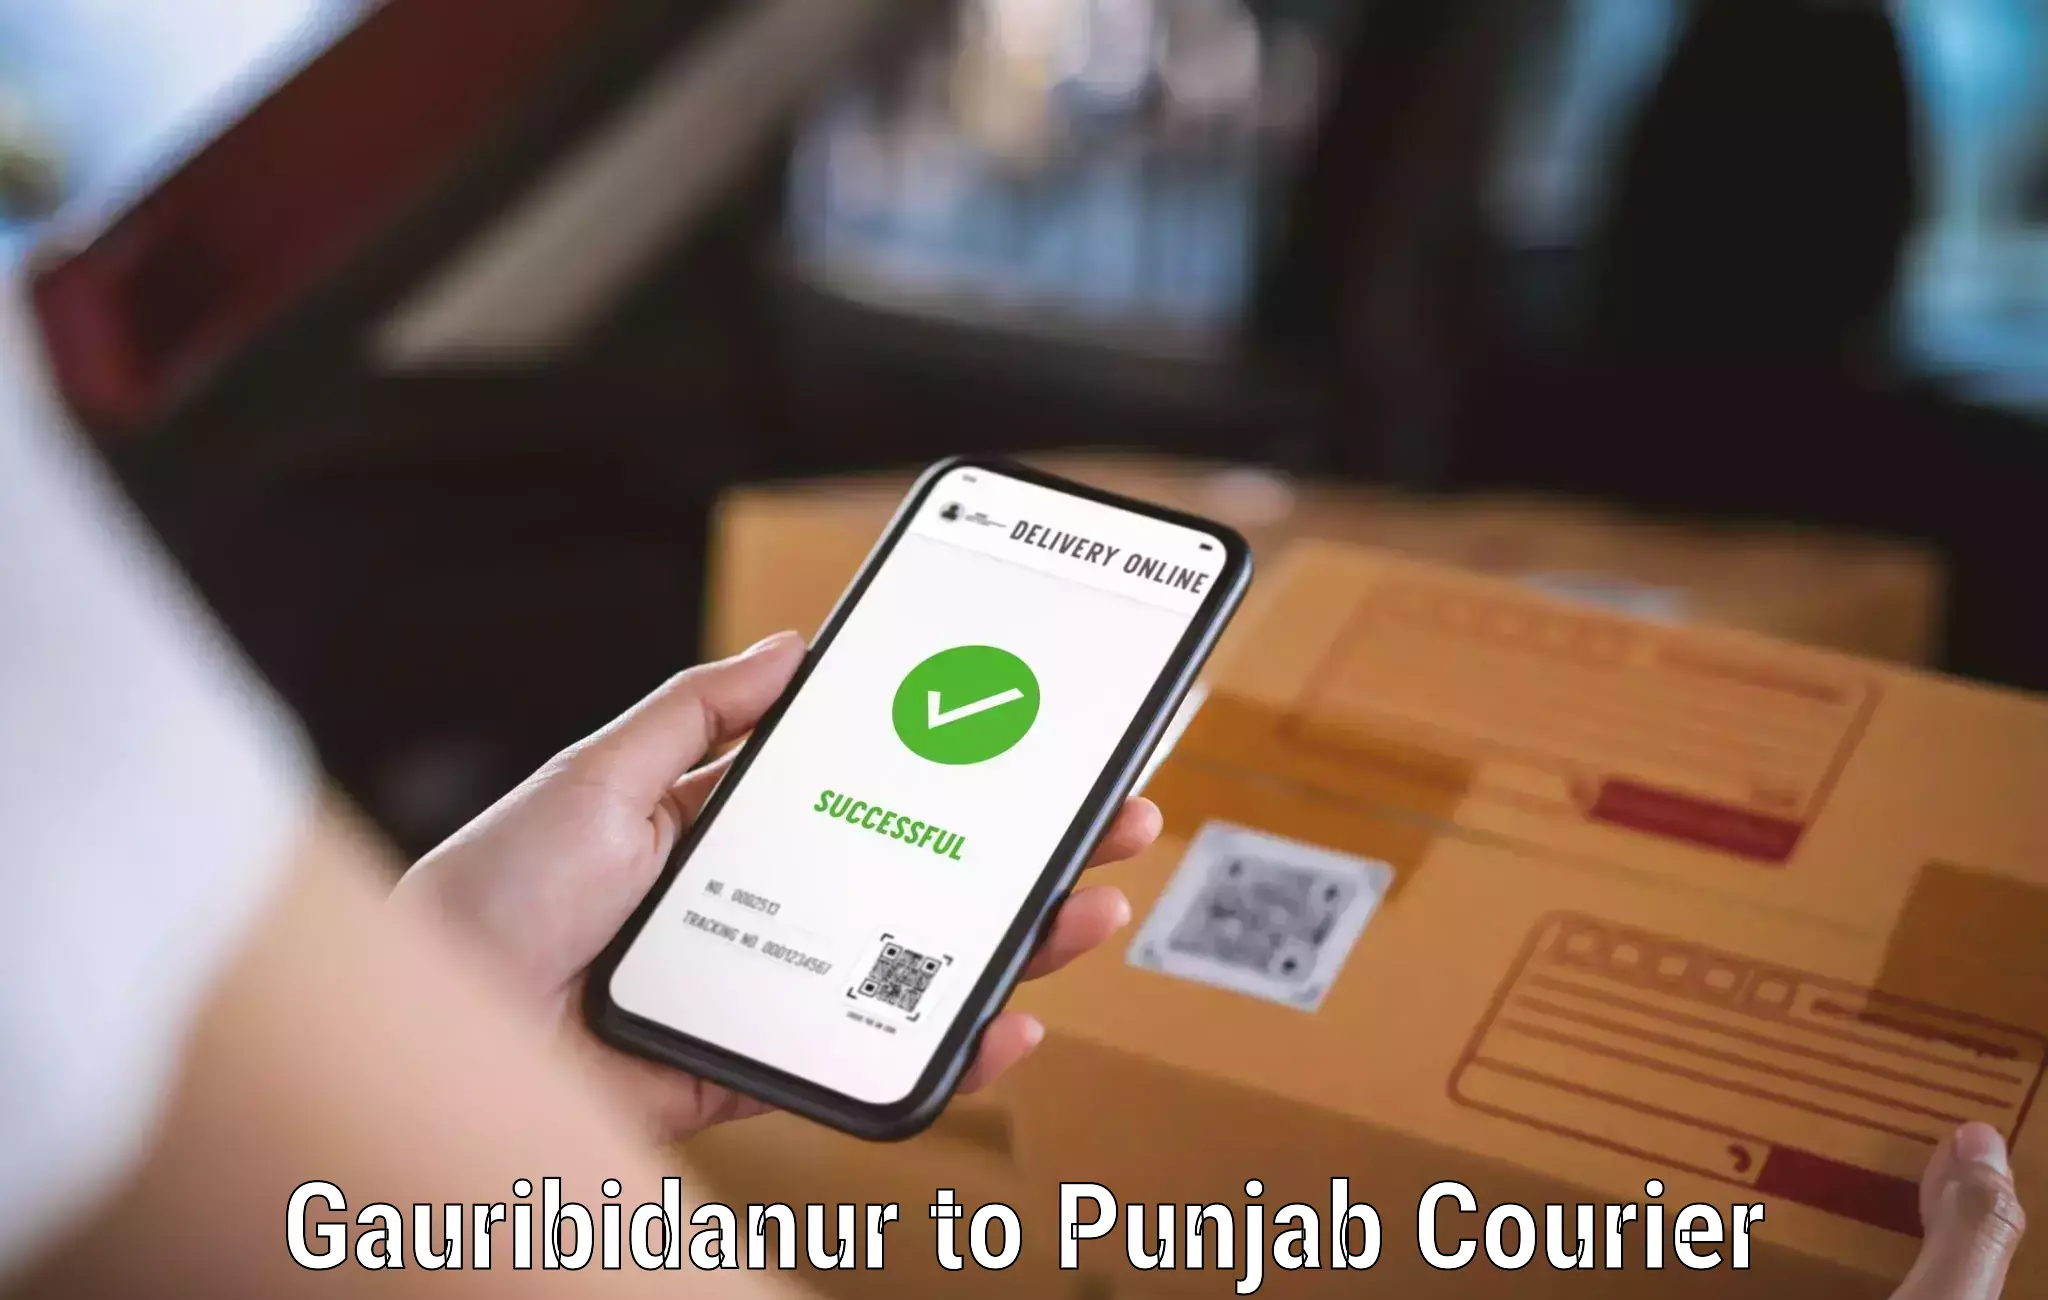 Lightweight parcel options Gauribidanur to Sultanpur Lodhi